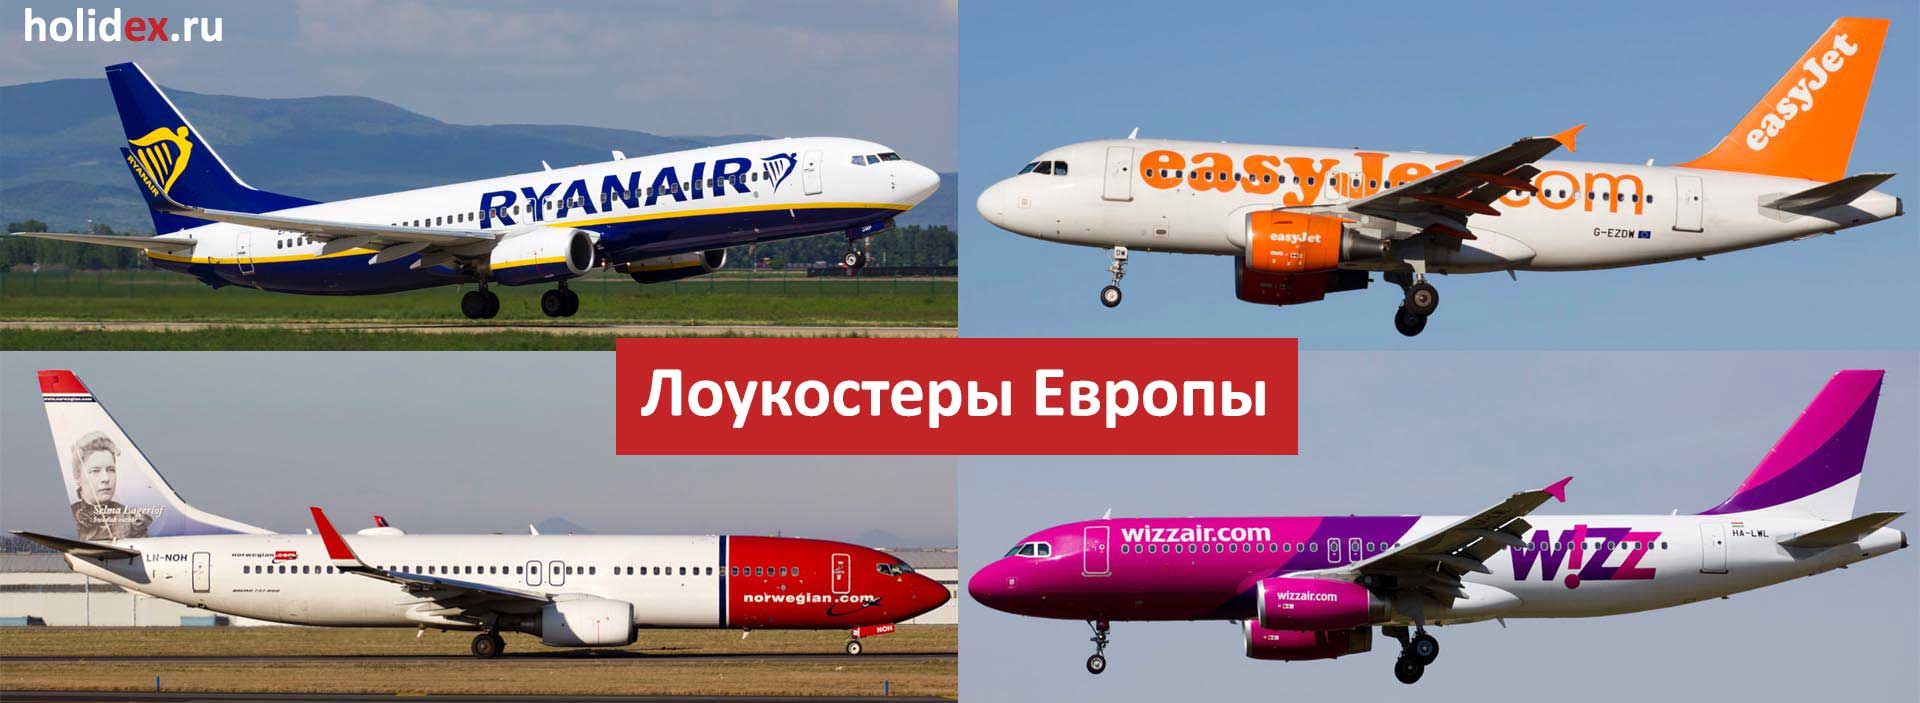 Как летать дешево: список бюджетных авиакомпаний европы